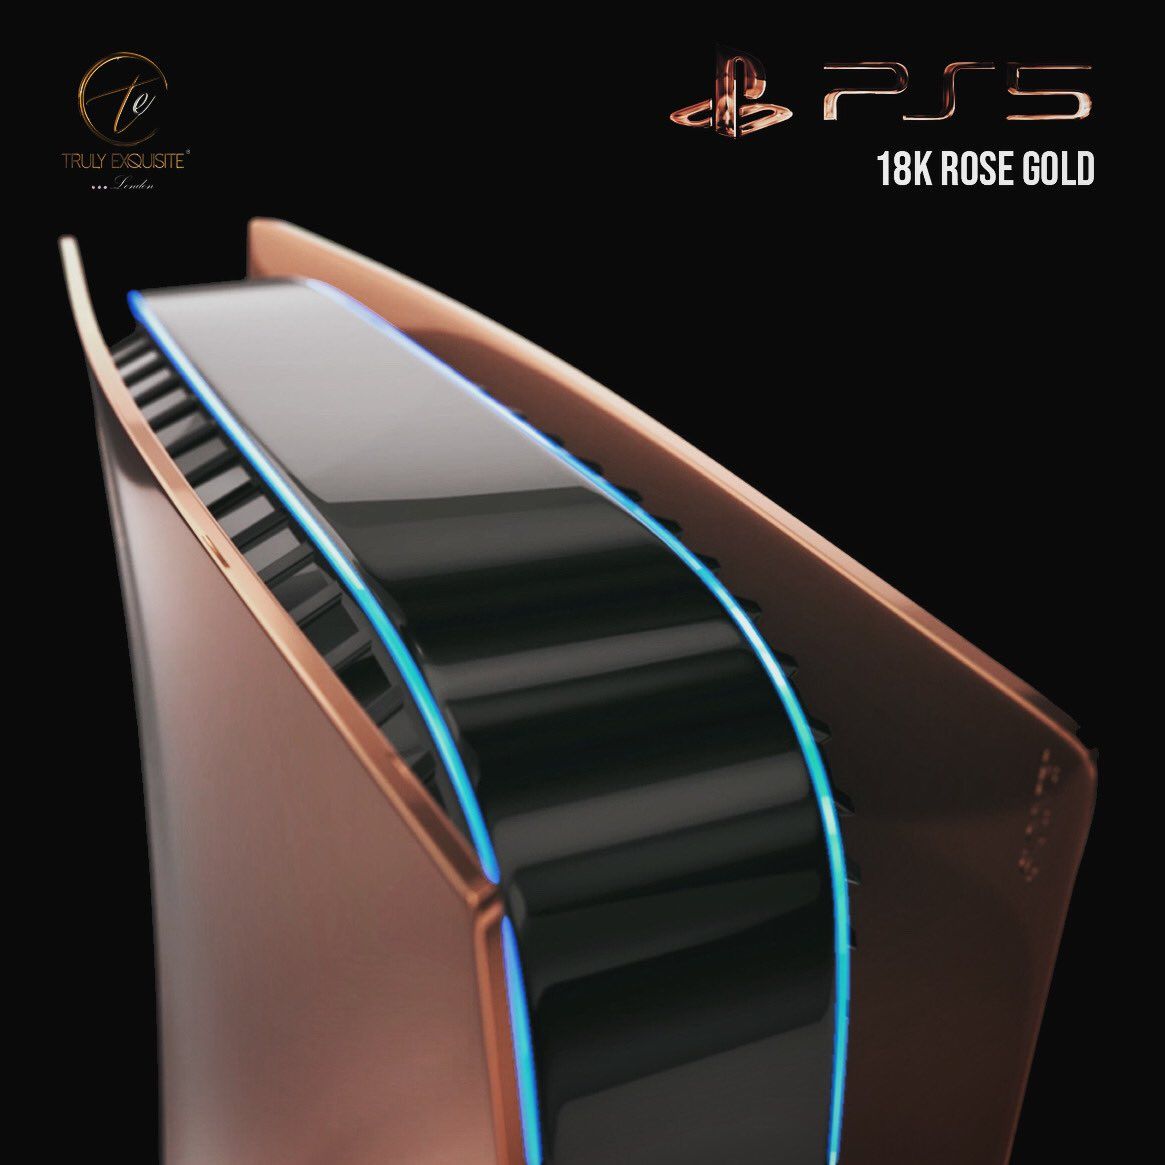 PlayStation 5, покрытая розовым золотом | Источник: Truly Exquisite